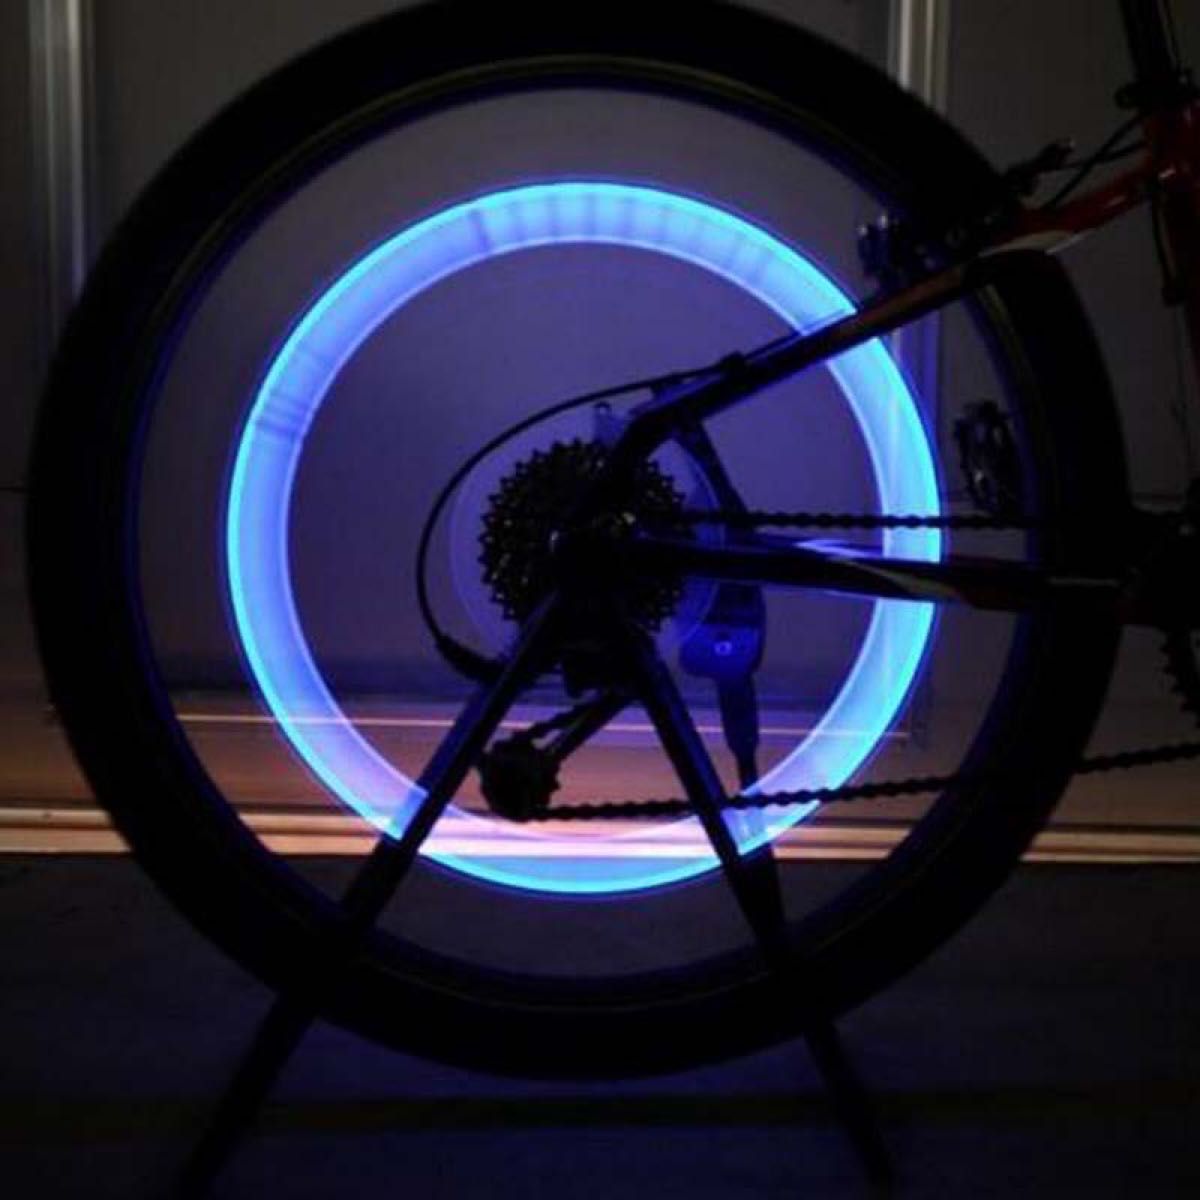 タイヤライト 自転車 バイク 車輪用 タイヤバルブキャップ ブルー タイヤアクセサリー LEDタイヤライト 